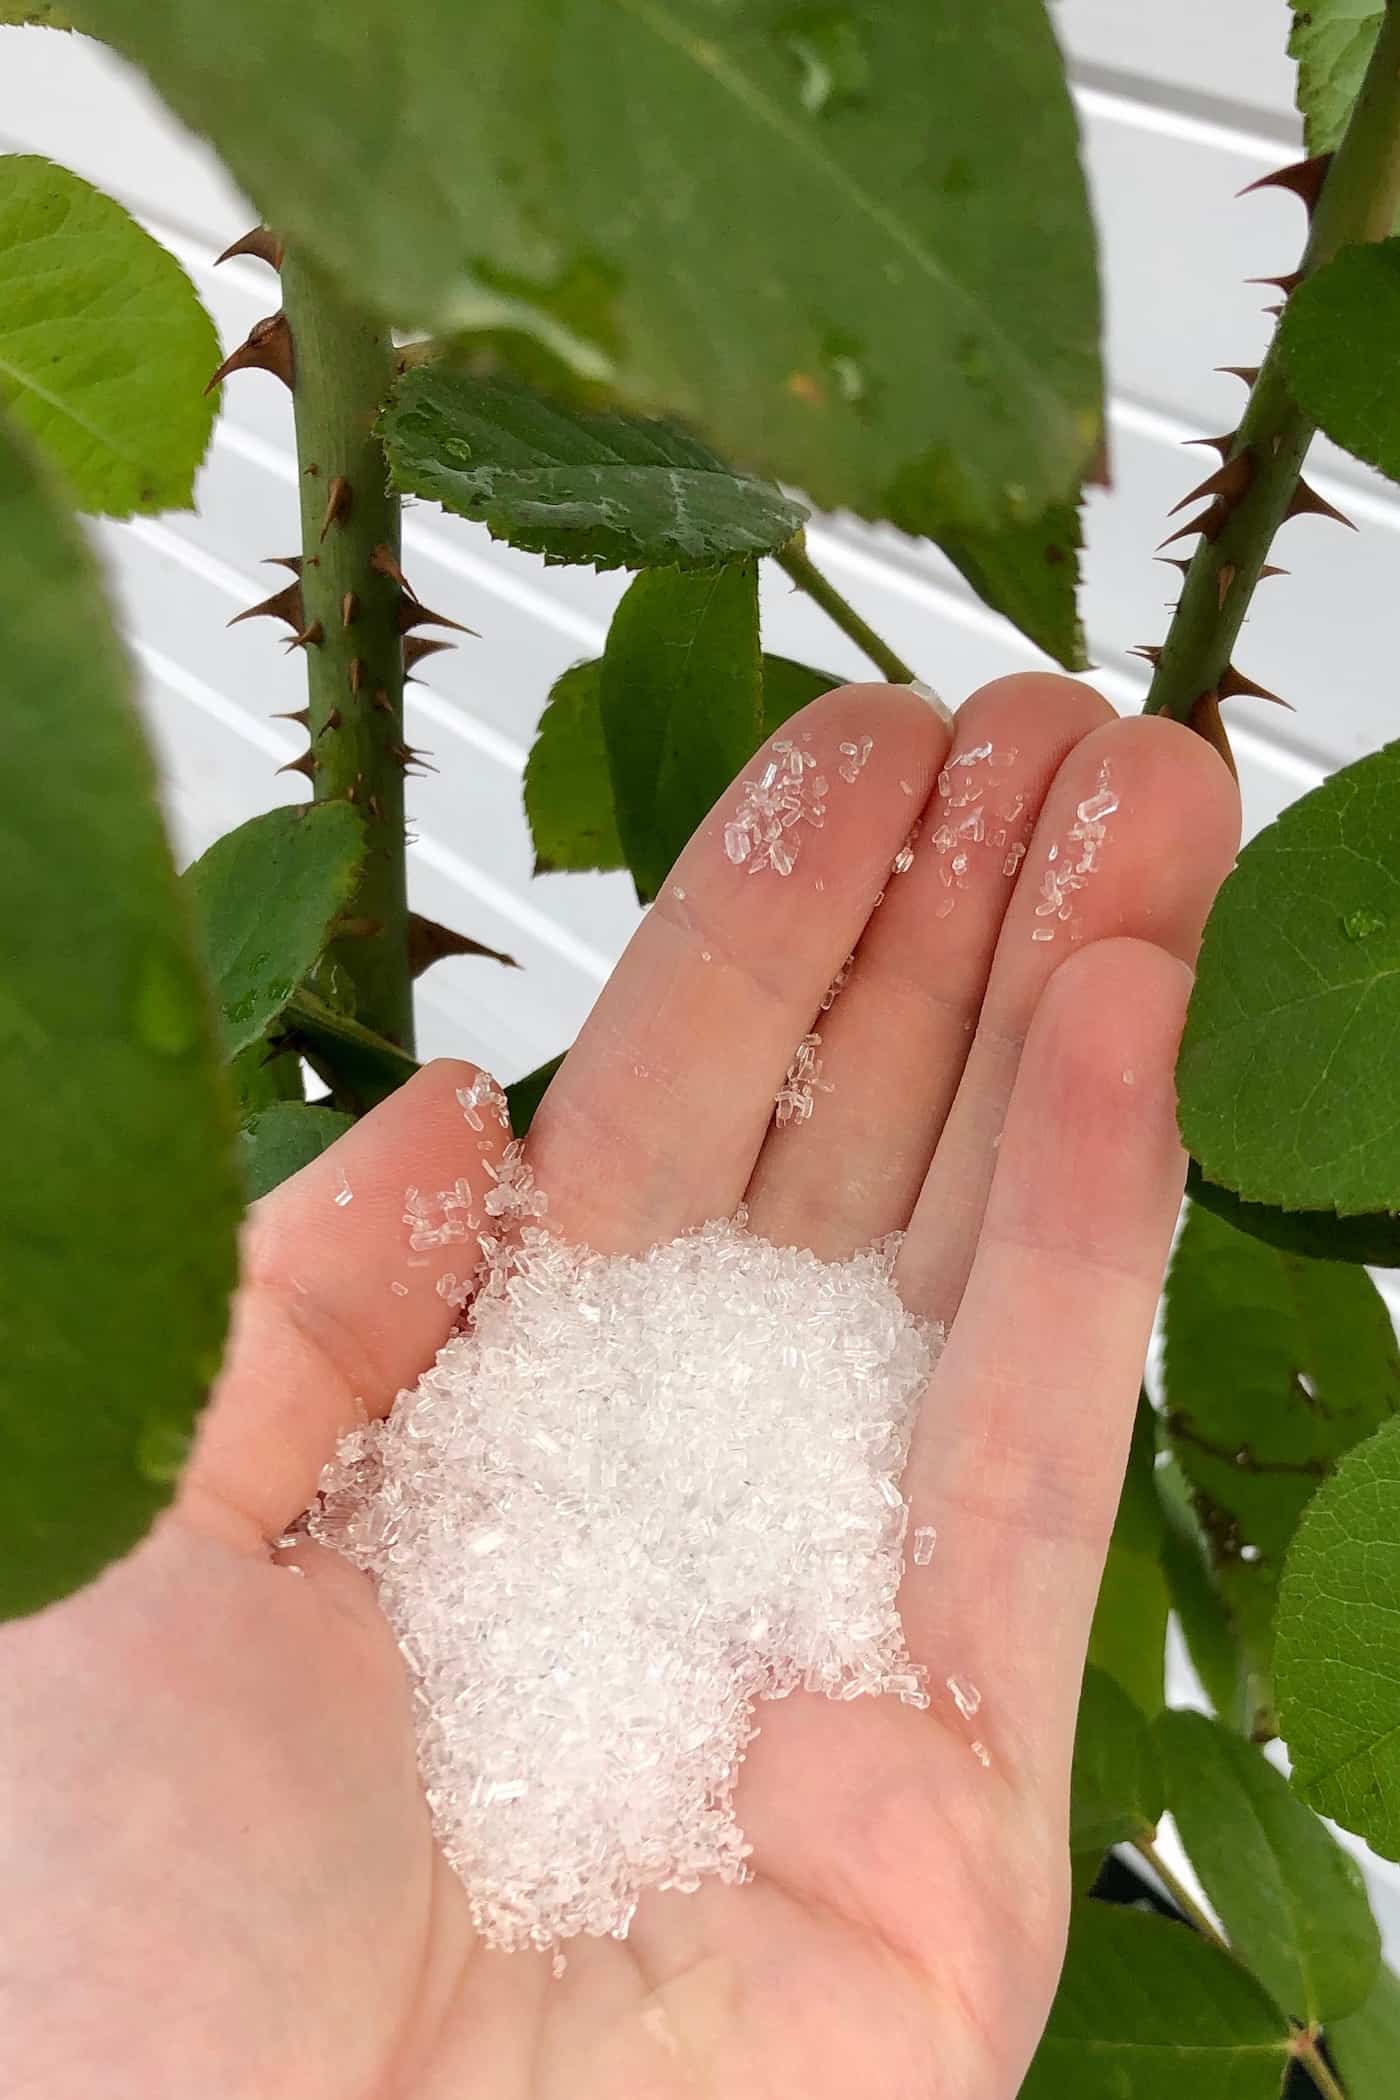 Epsom Salt for Plants: Don't Do It!